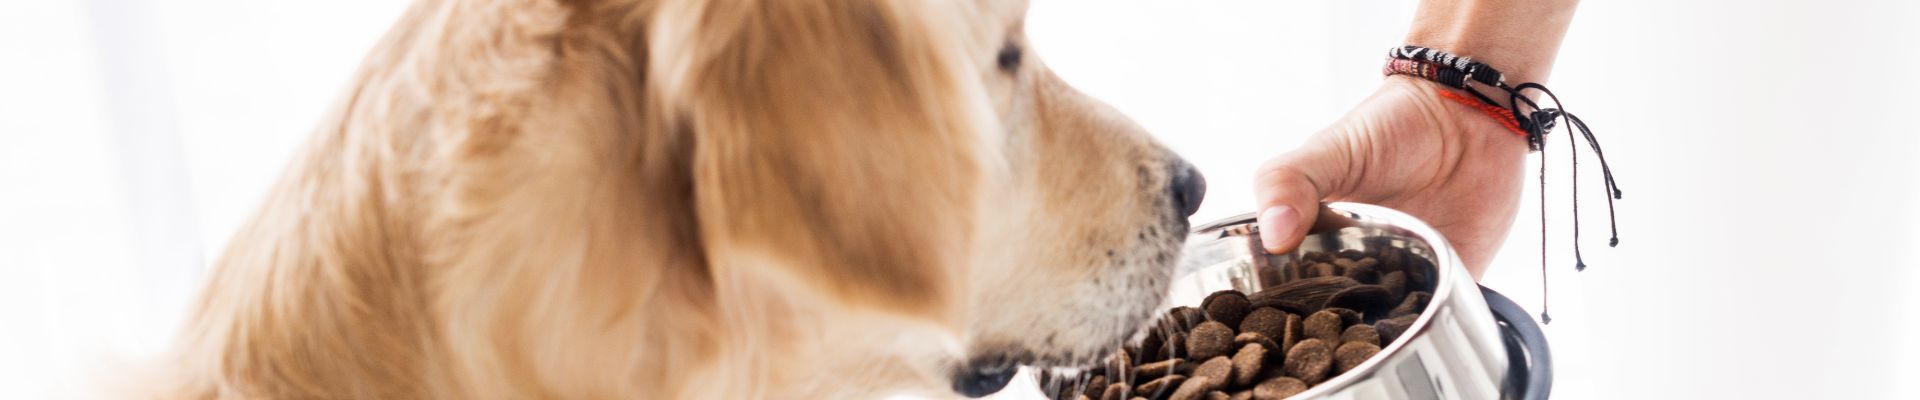 Dueño de perro sostetiendo un tazón lleno de alimento para su golden retriever